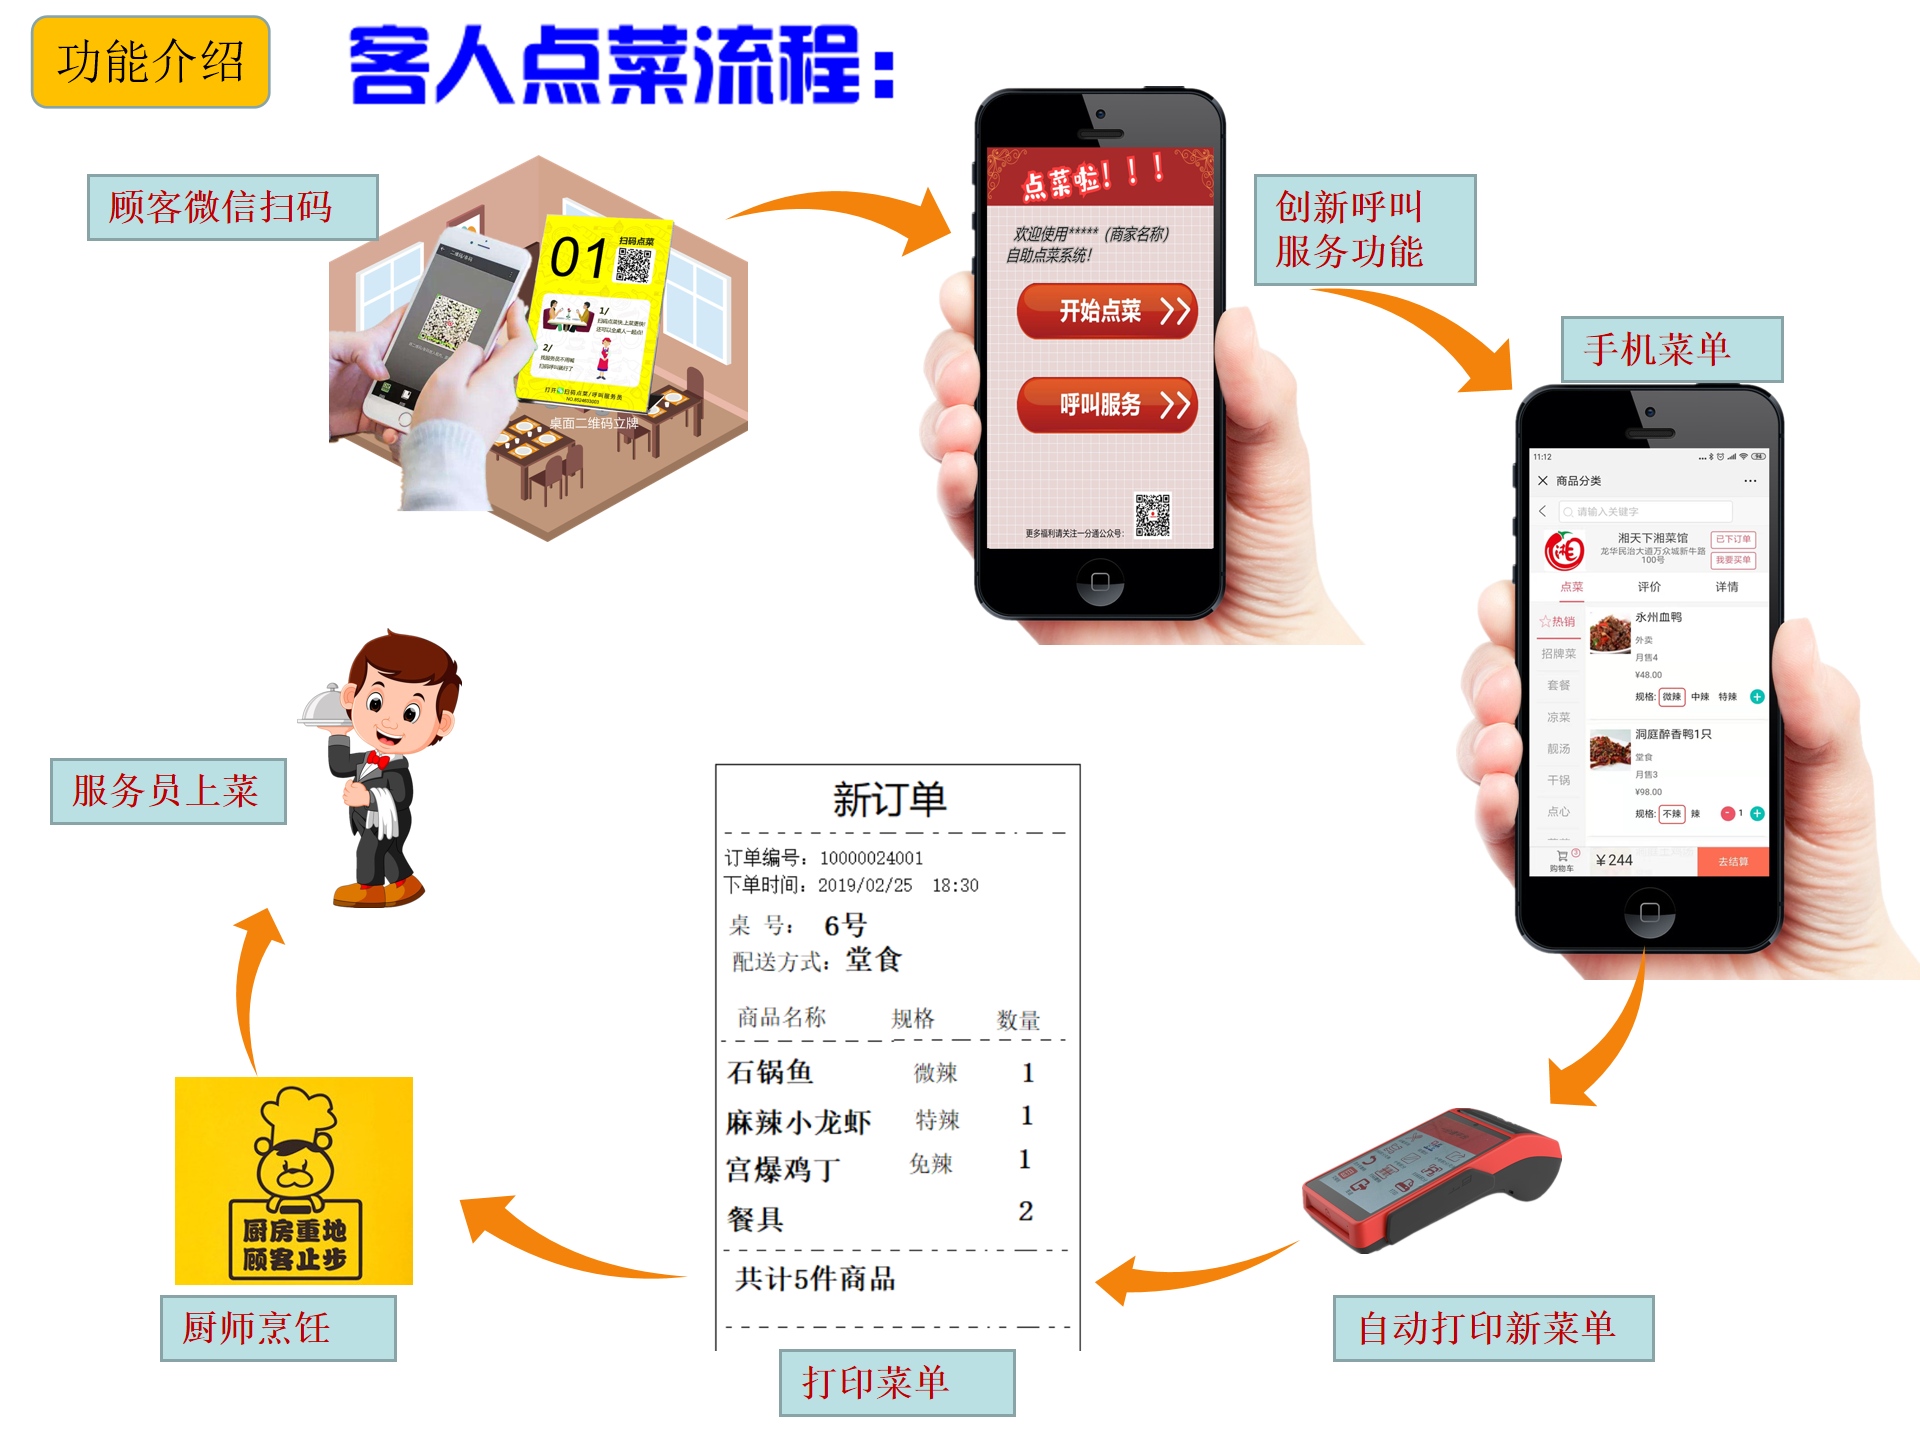 新概念微信点餐系统多少钱_自助点餐相关-深圳市中贤在线技术有限公司